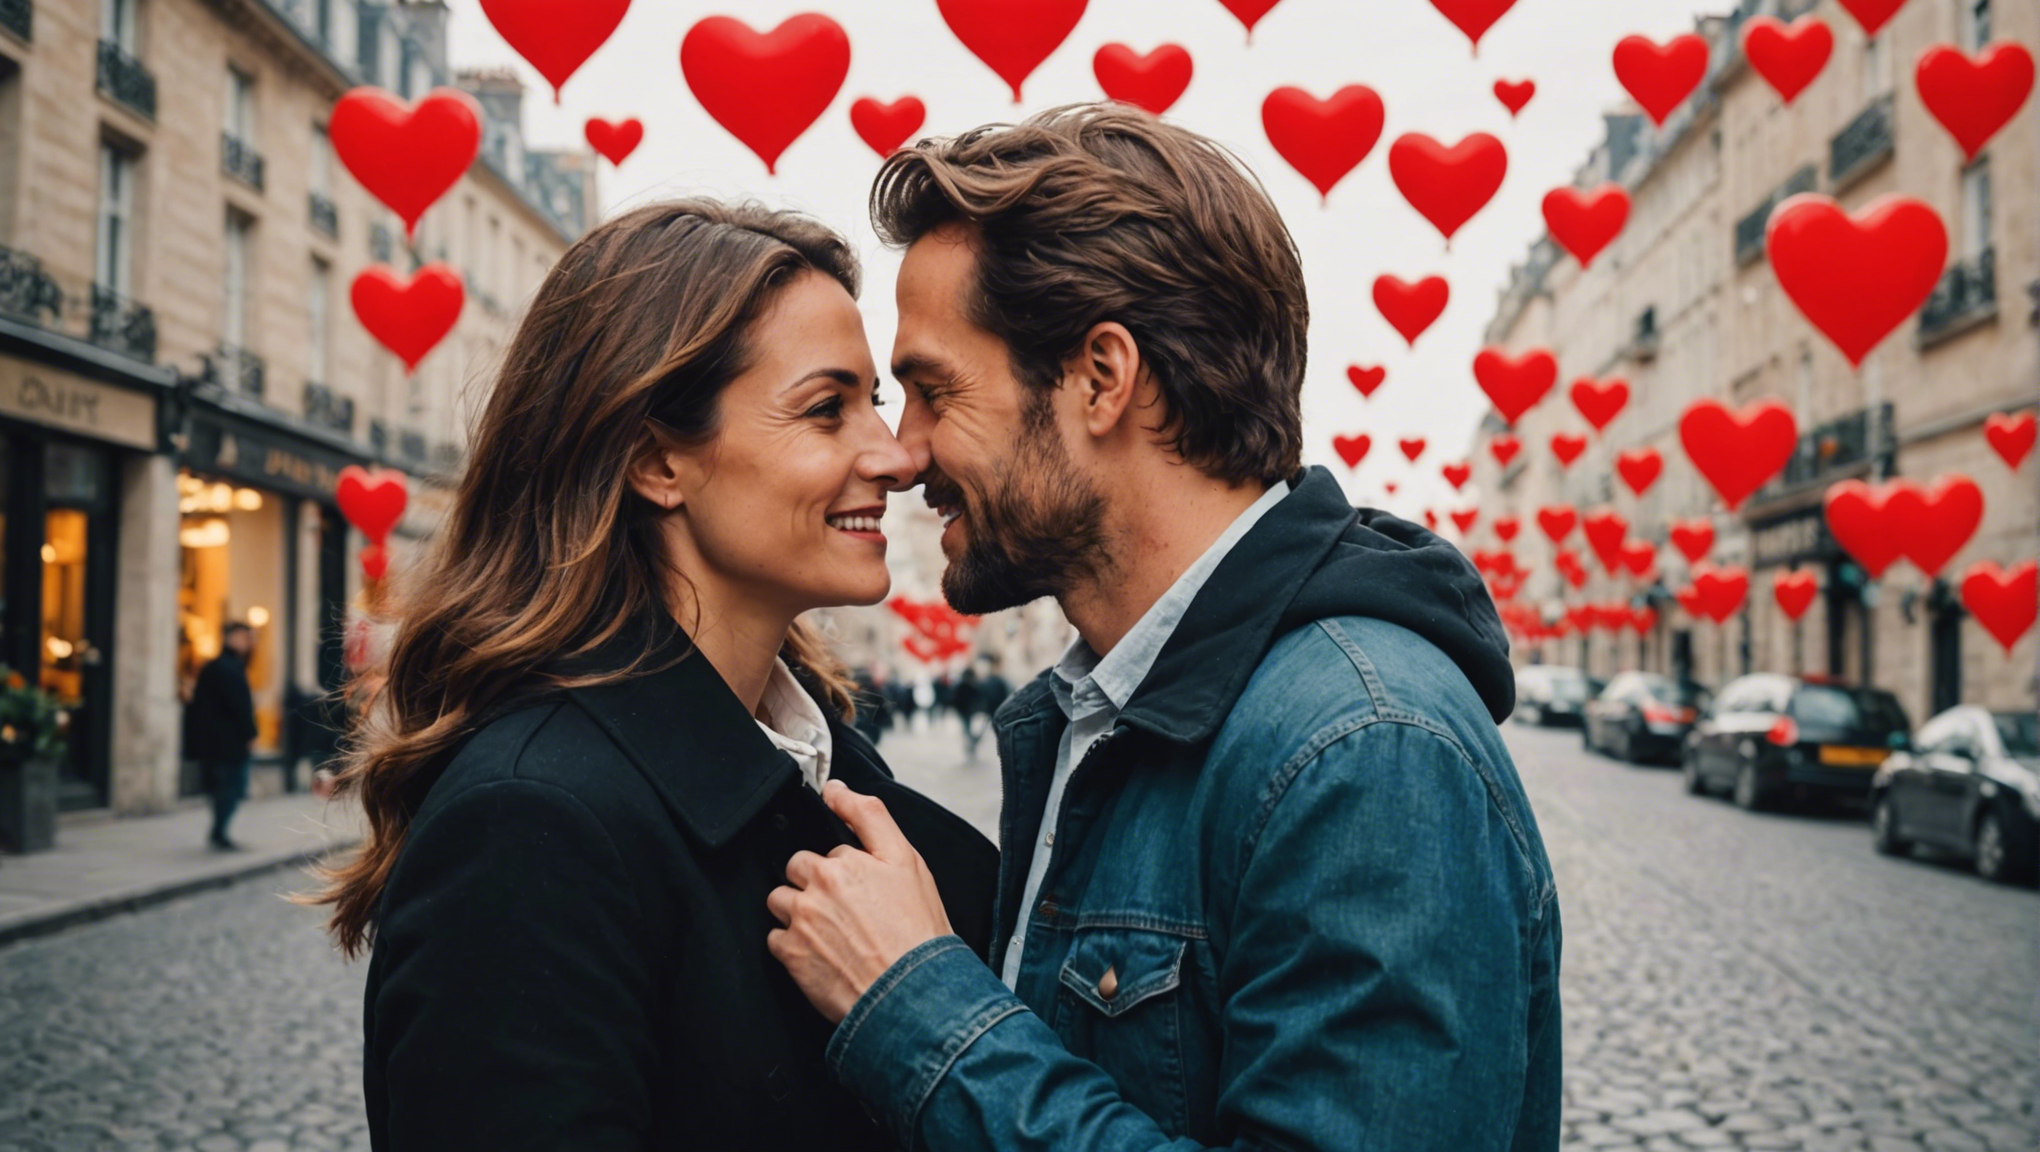 découvrez les questions à poser pour approfondir votre relation amoureuse et renforcer votre connexion avec votre partenaire.